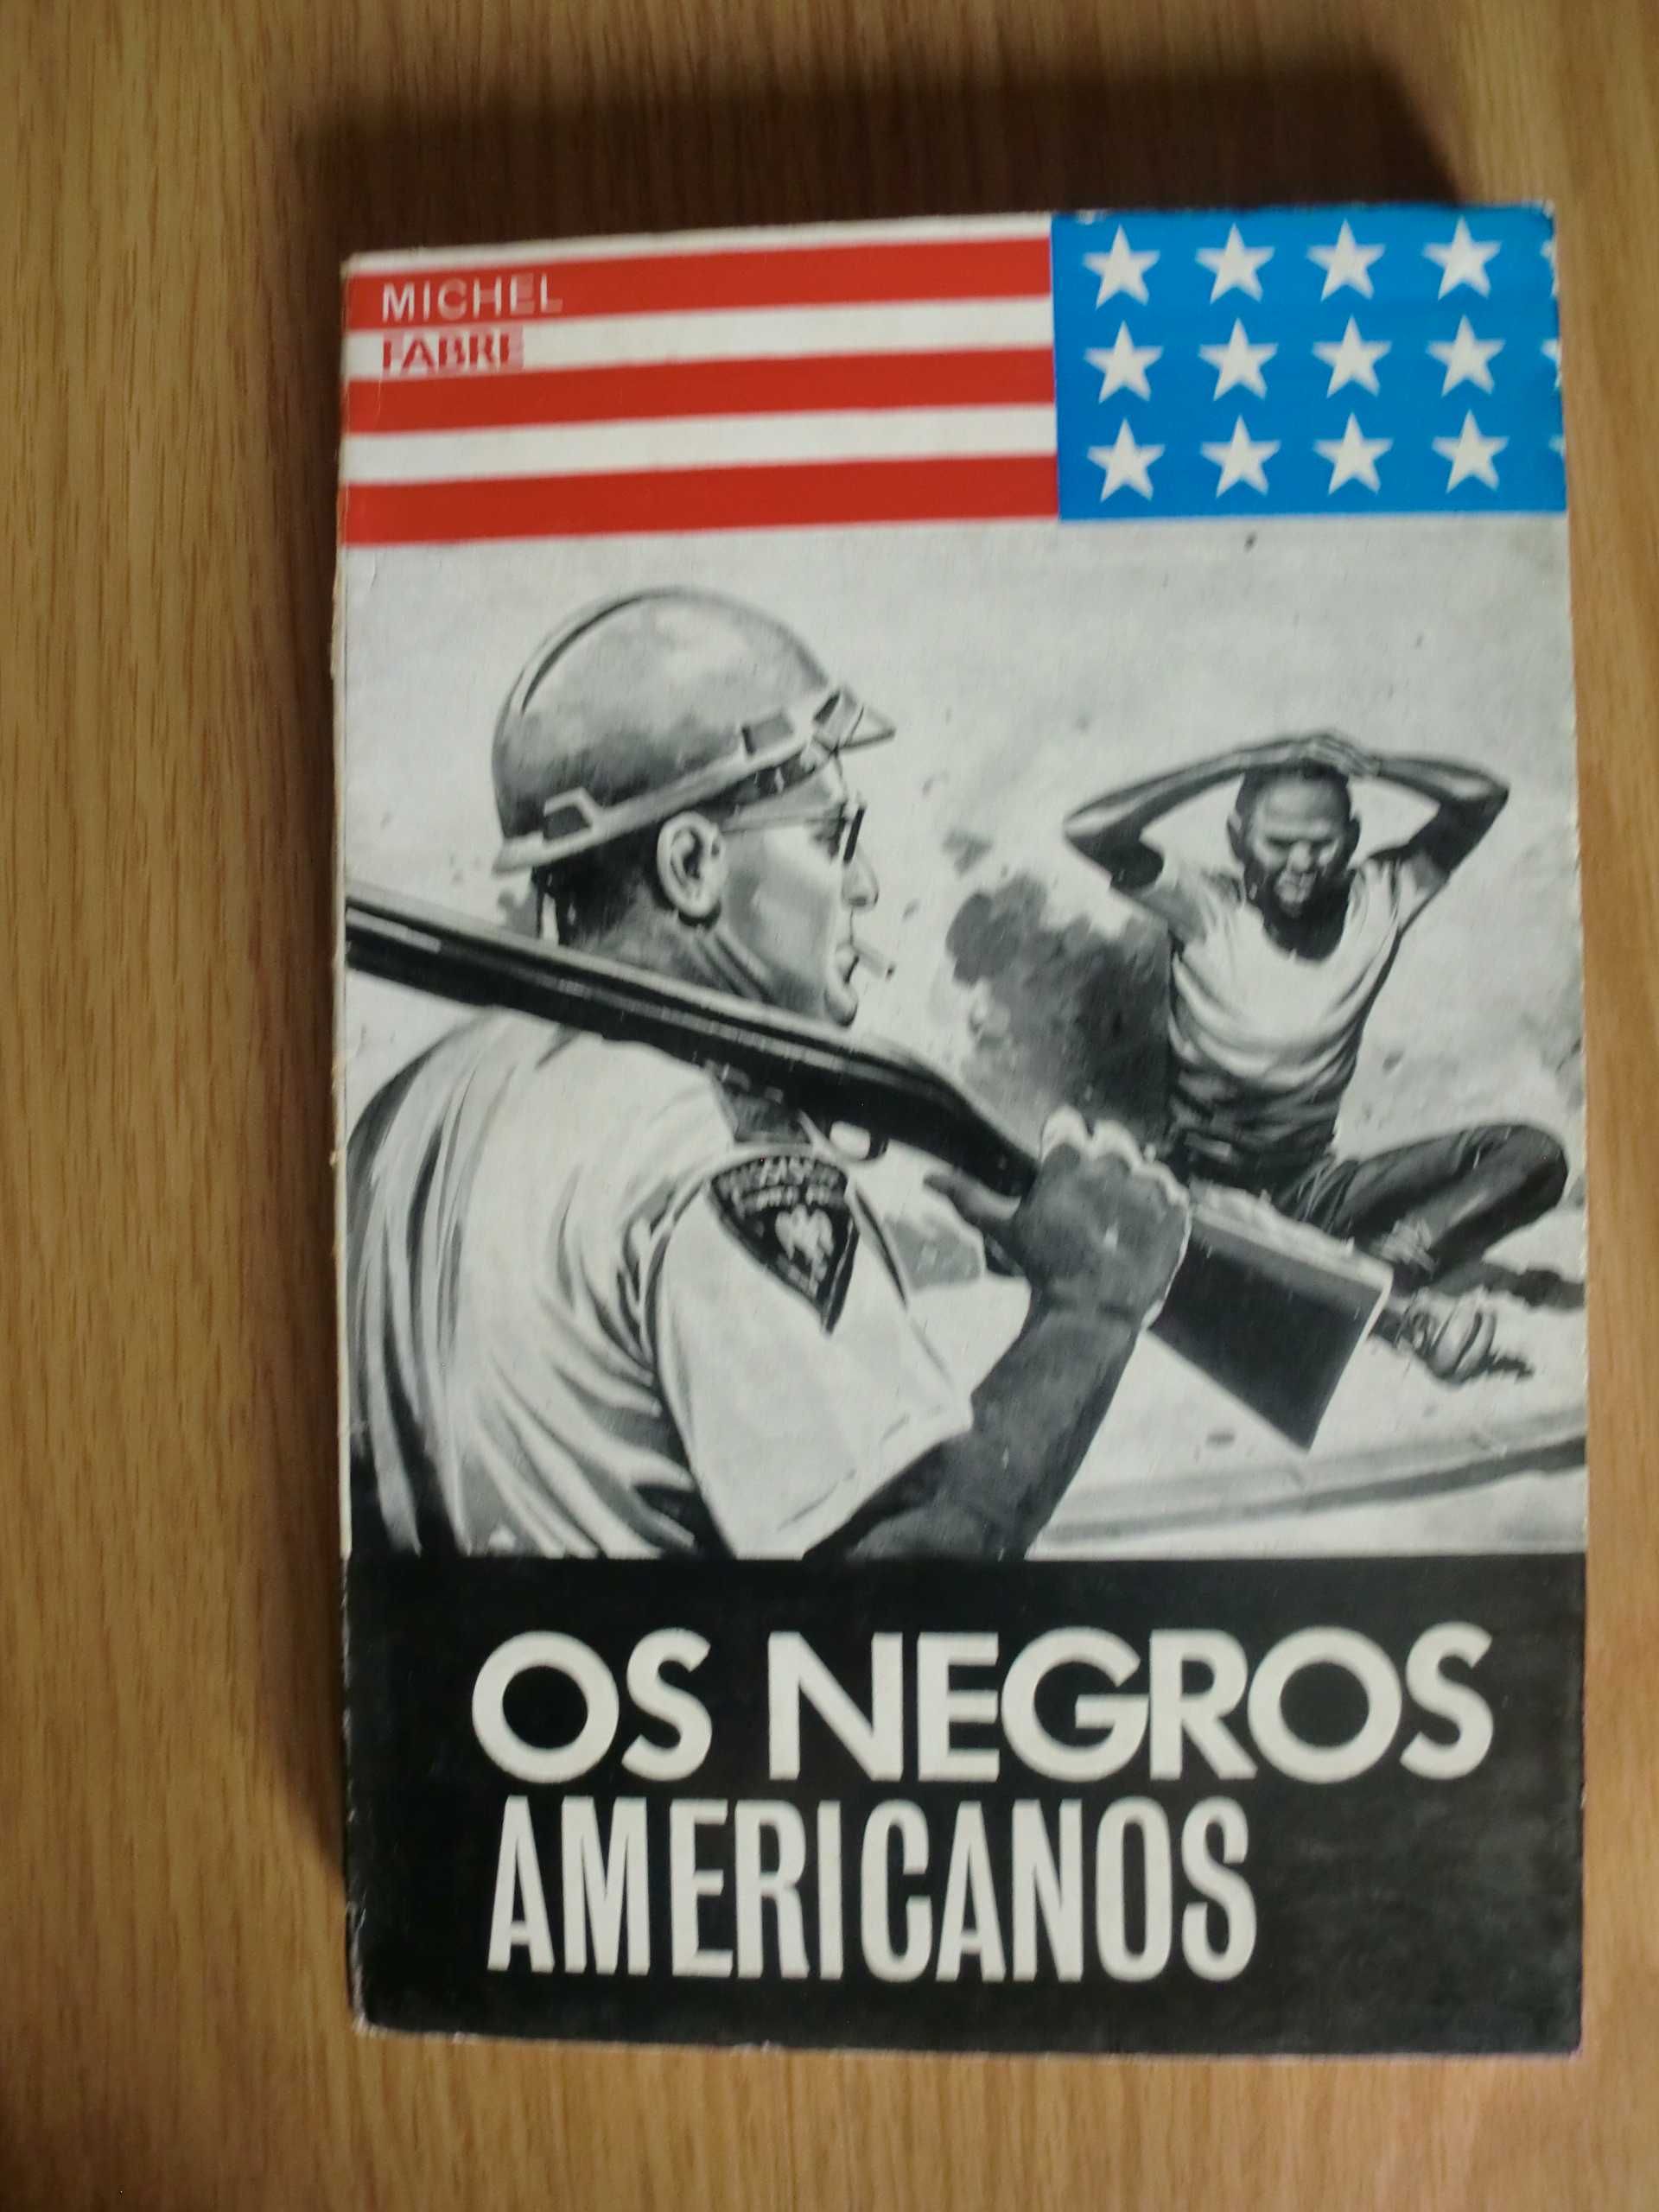 Os Negros Americanos
de Michel Fabre